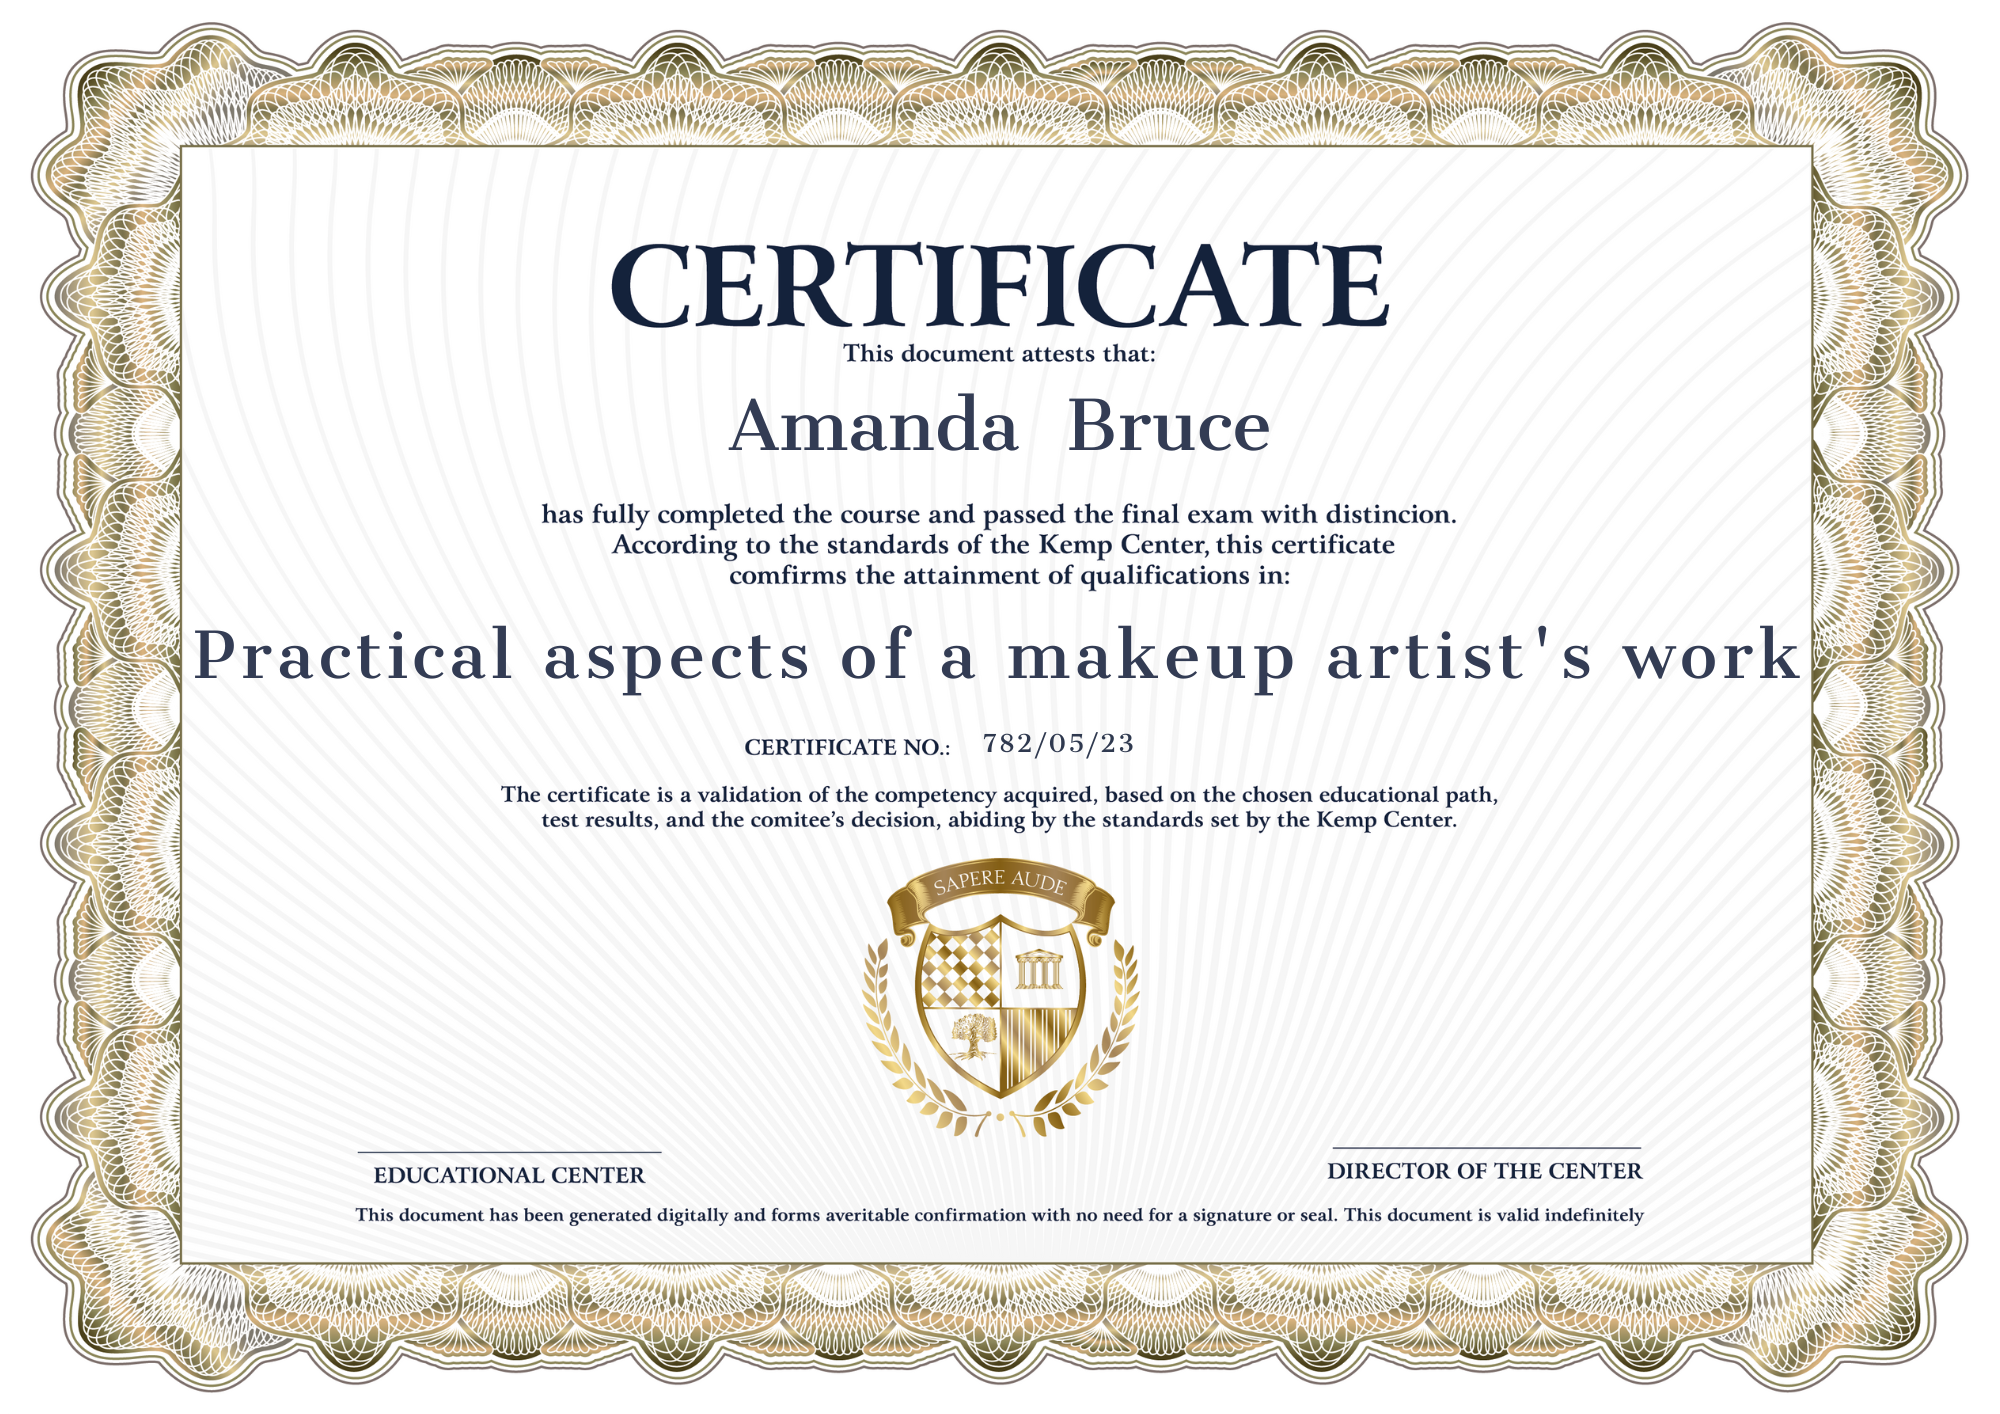 Certificat Classe d'artiste maquilleur